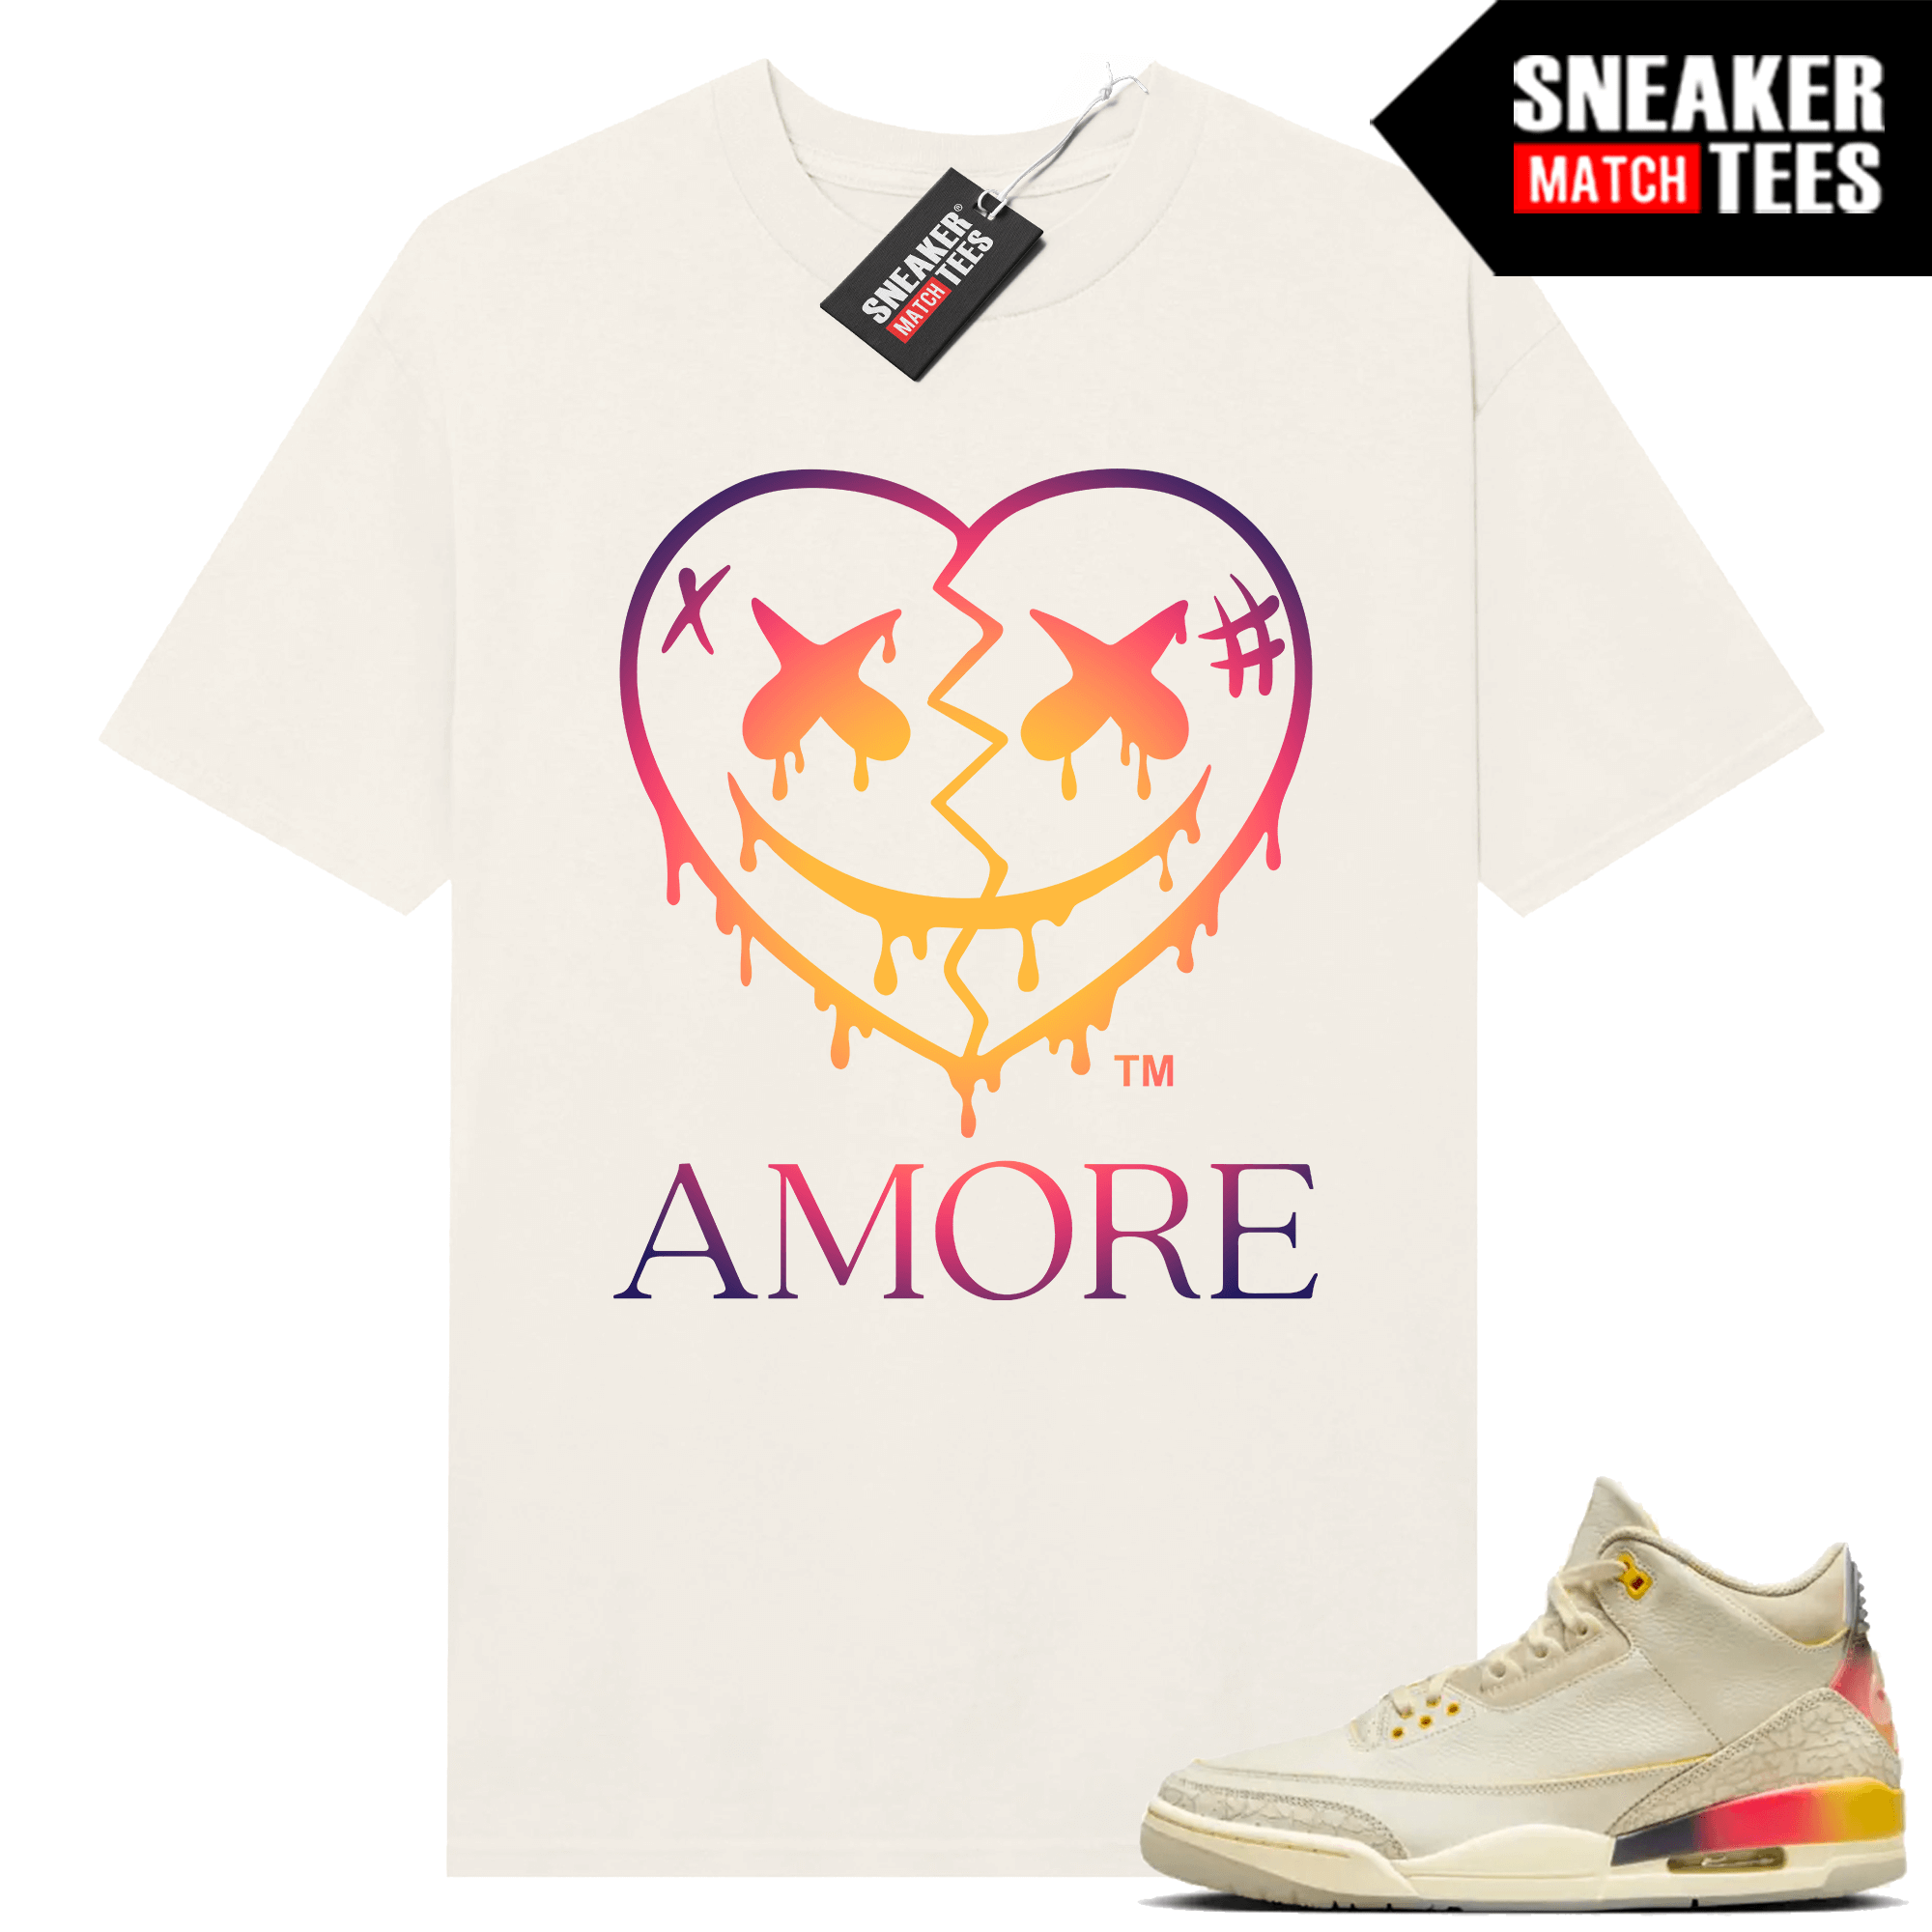 Jordan 3 J Balvin Urlfreeze Sneaker Match T-shirt Sail AMORE Crazy Love Heart